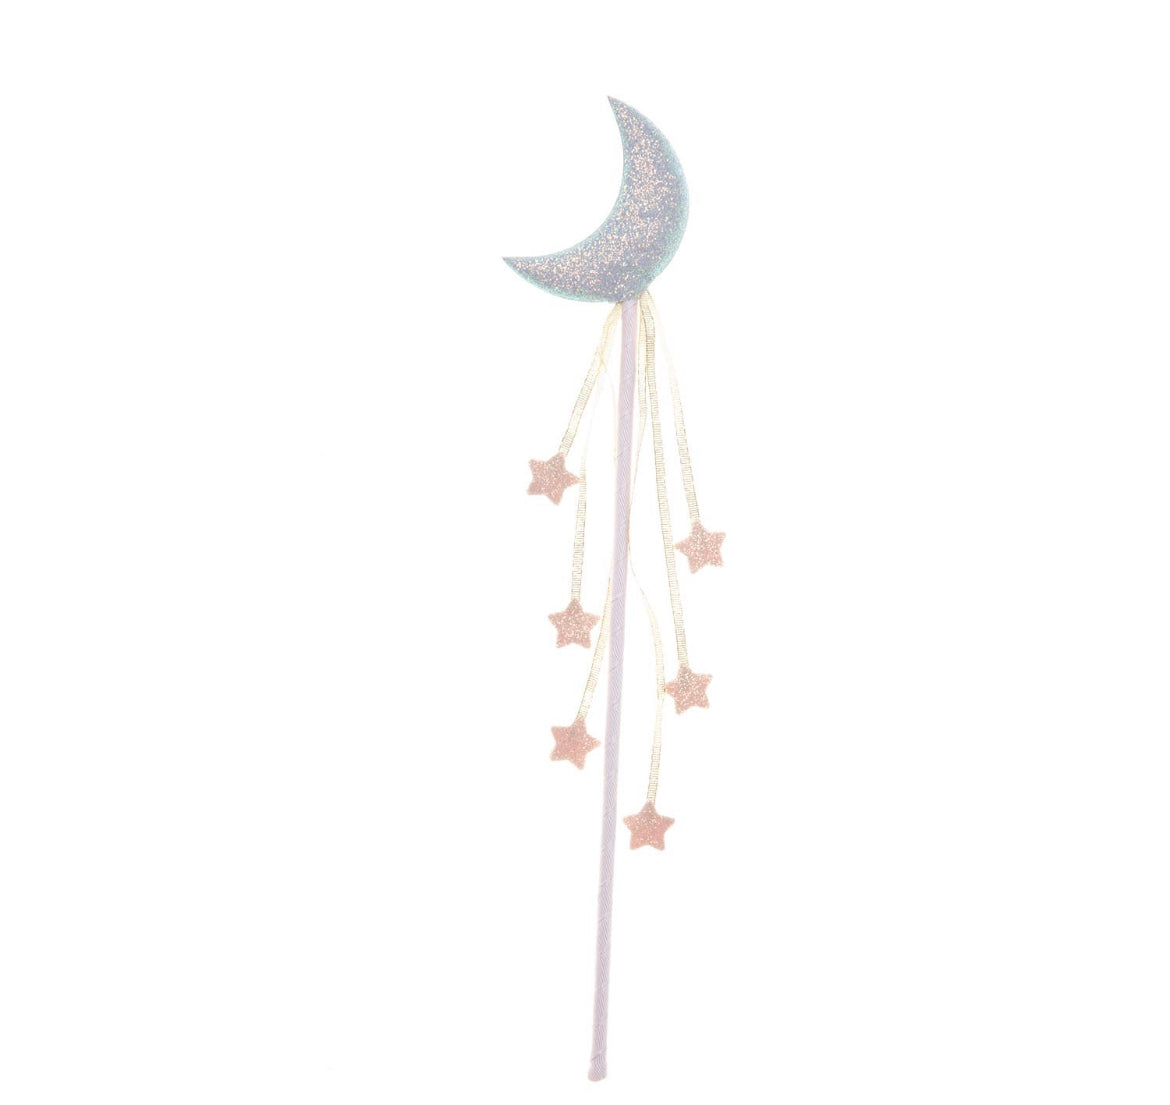 Moon wand